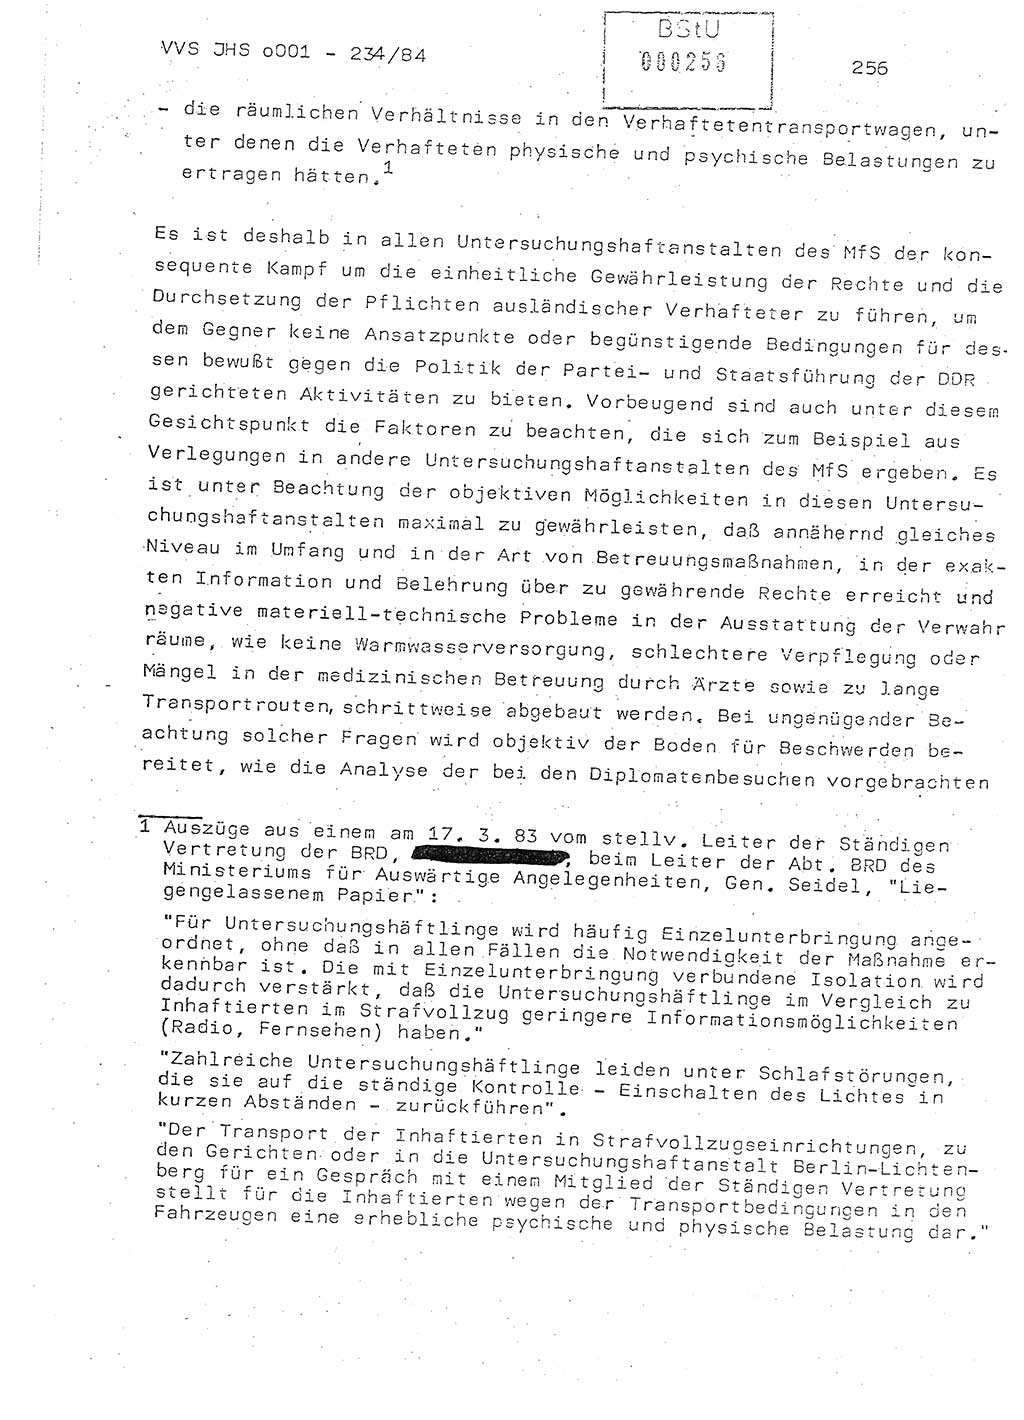 Dissertation Oberst Siegfried Rataizick (Abt. ⅩⅣ), Oberstleutnant Volkmar Heinz (Abt. ⅩⅣ), Oberstleutnant Werner Stein (HA Ⅸ), Hauptmann Heinz Conrad (JHS), Ministerium für Staatssicherheit (MfS) [Deutsche Demokratische Republik (DDR)], Juristische Hochschule (JHS), Vertrauliche Verschlußsache (VVS) o001-234/84, Potsdam 1984, Seite 256 (Diss. MfS DDR JHS VVS o001-234/84 1984, S. 256)